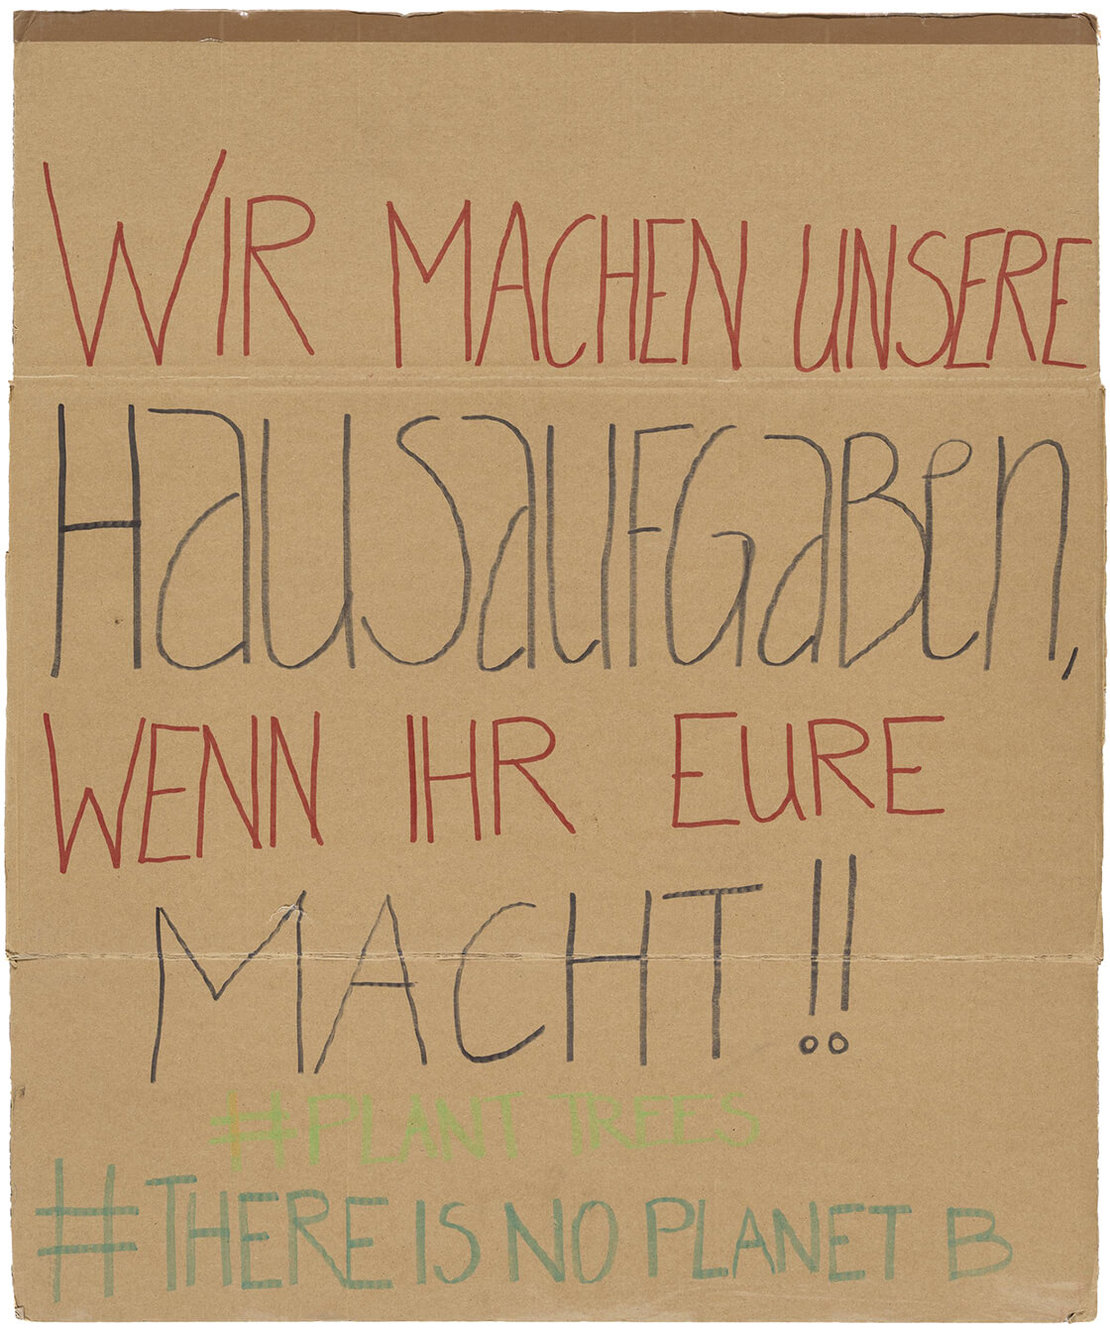 Protestschilder der „Fridays for Future“-Bewegung in Wien, 2019, Wien Museum 